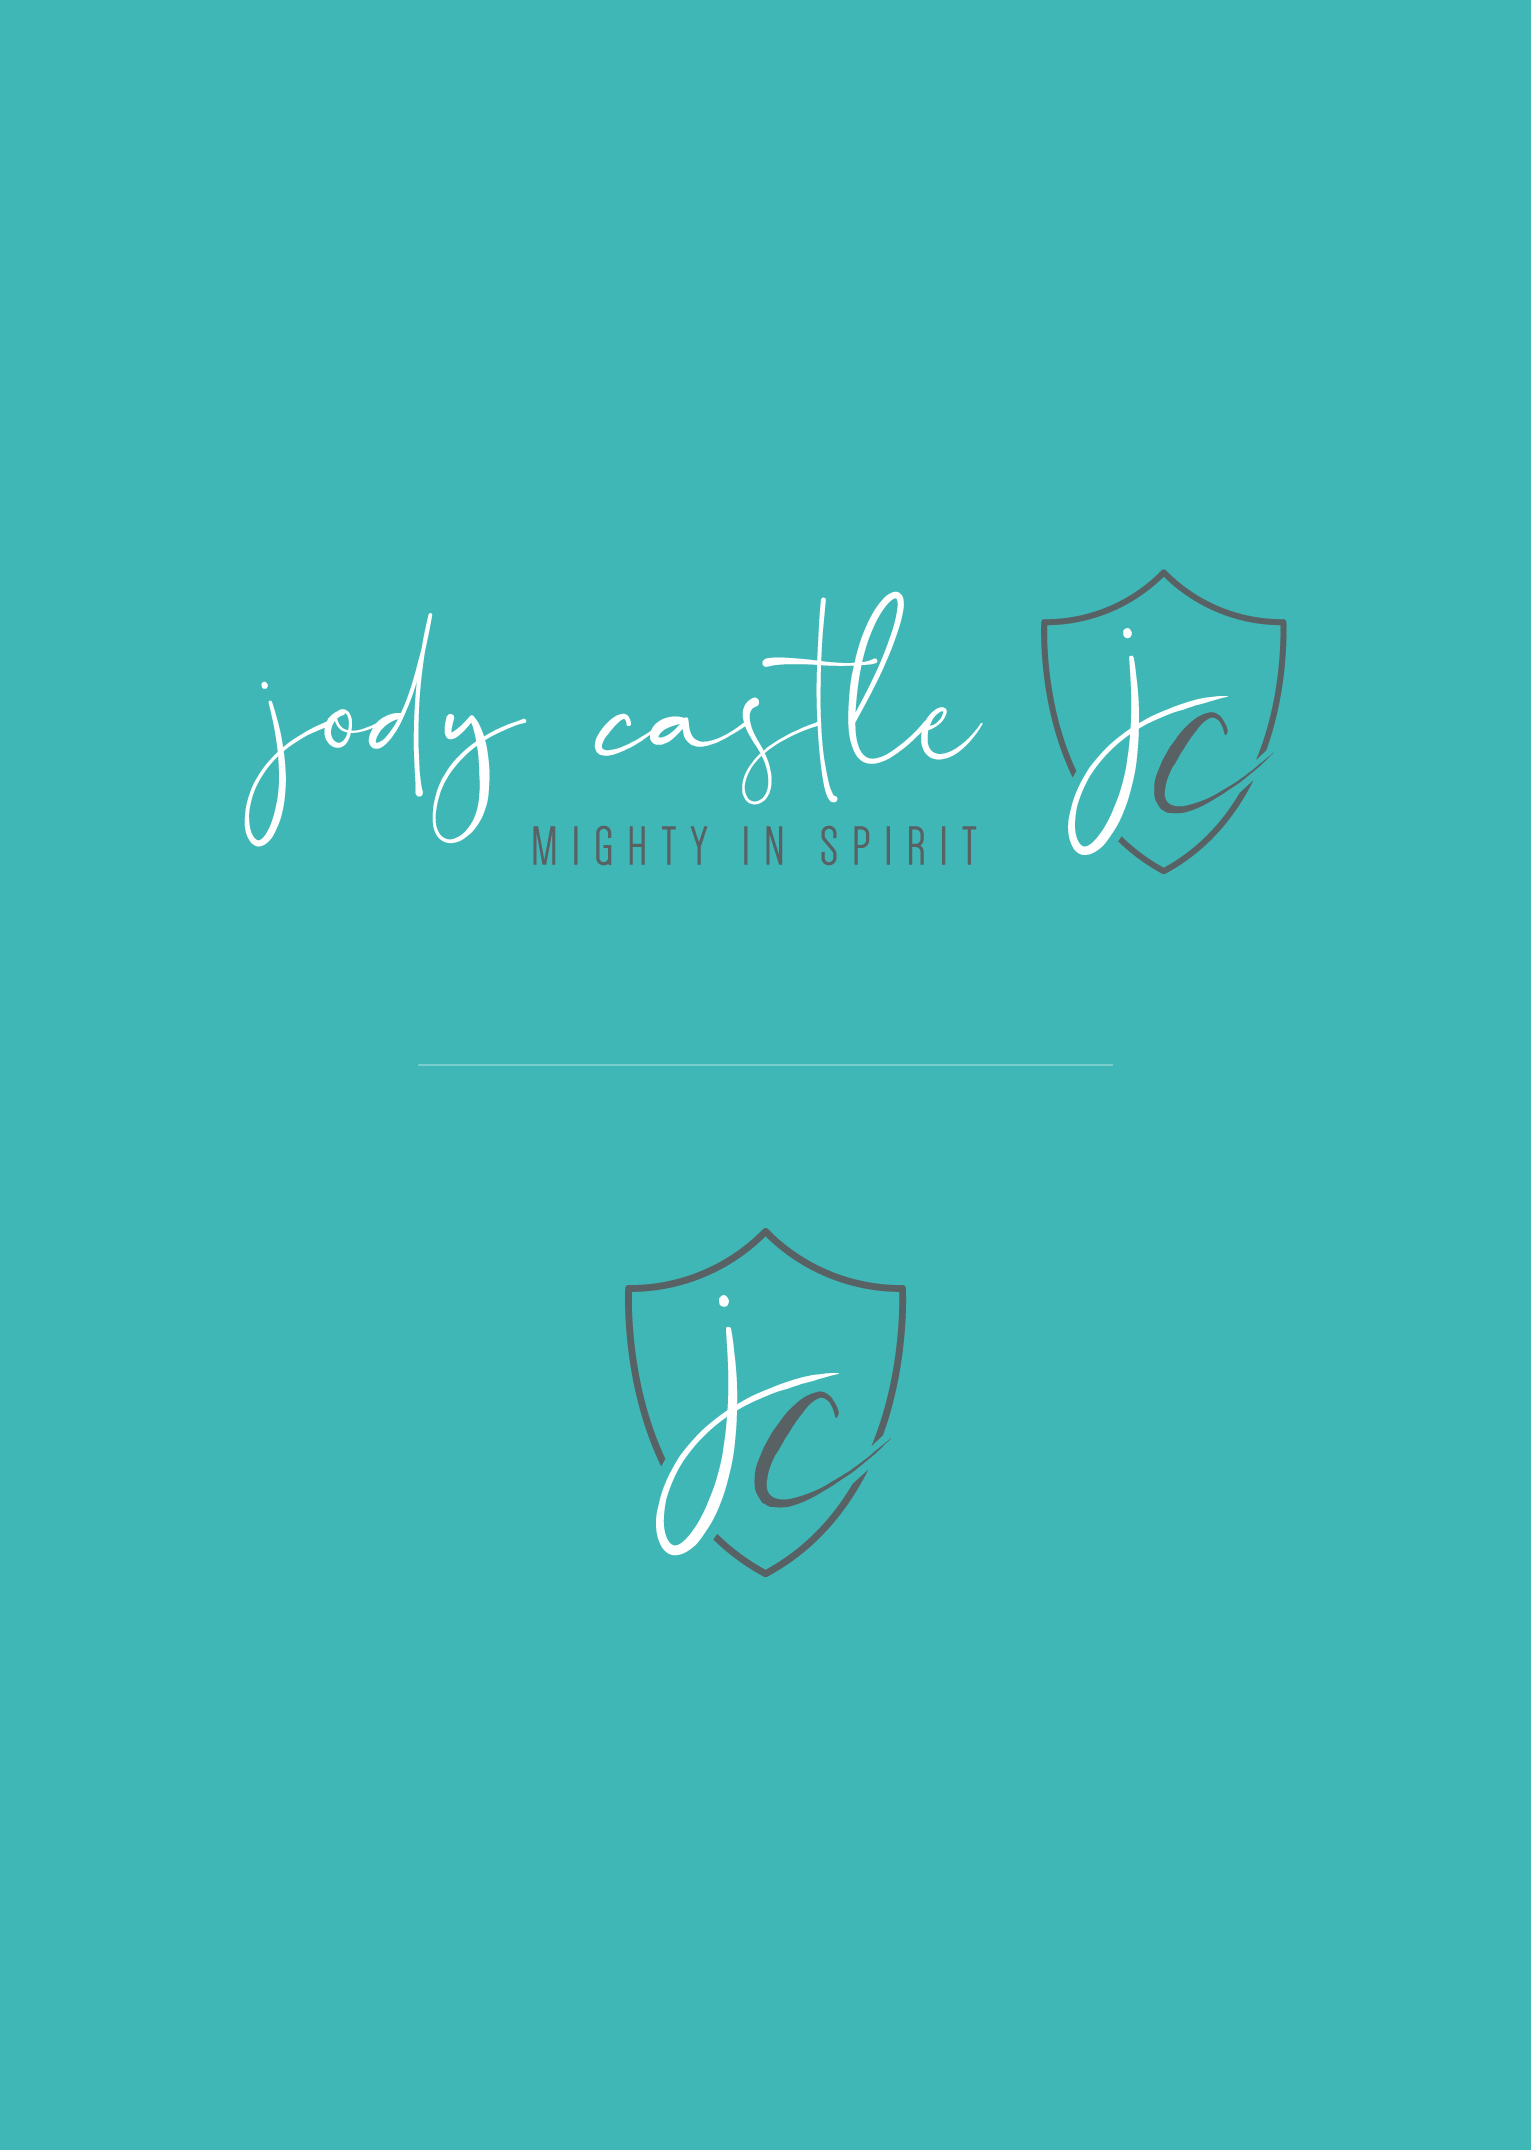 Jody Castle Branding